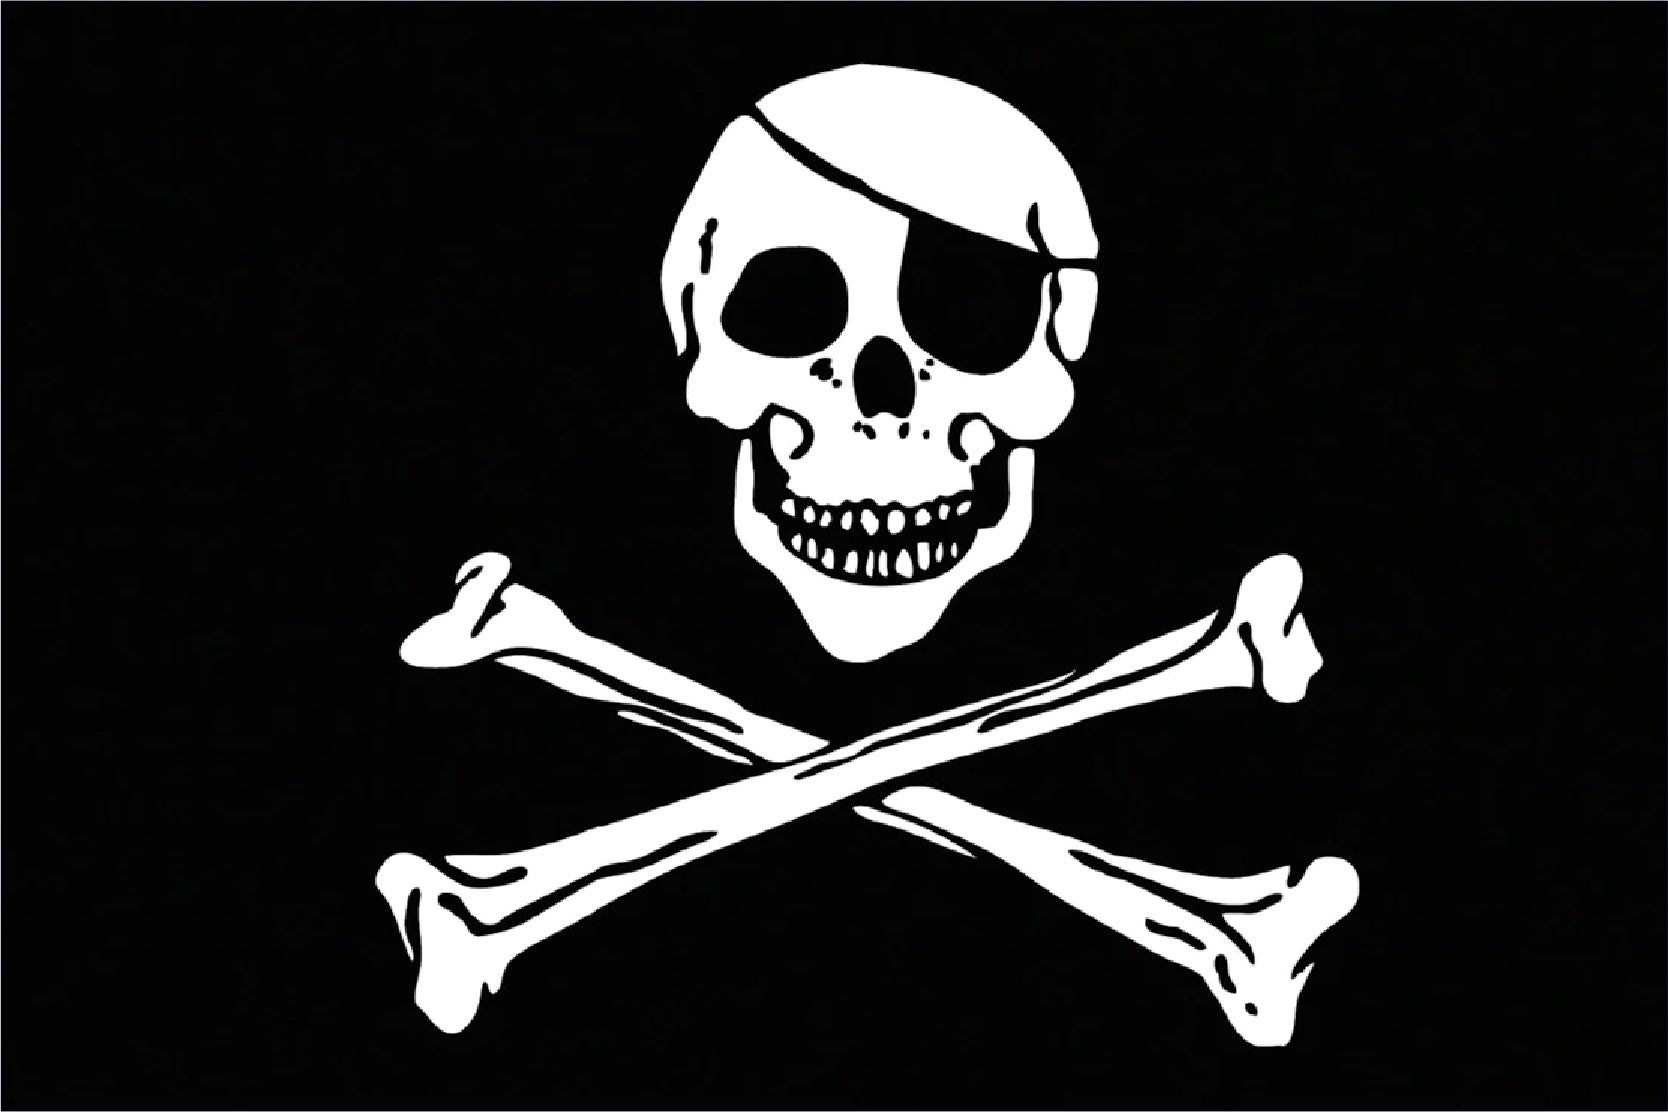 jolly roger flag, skull and crossbones flag